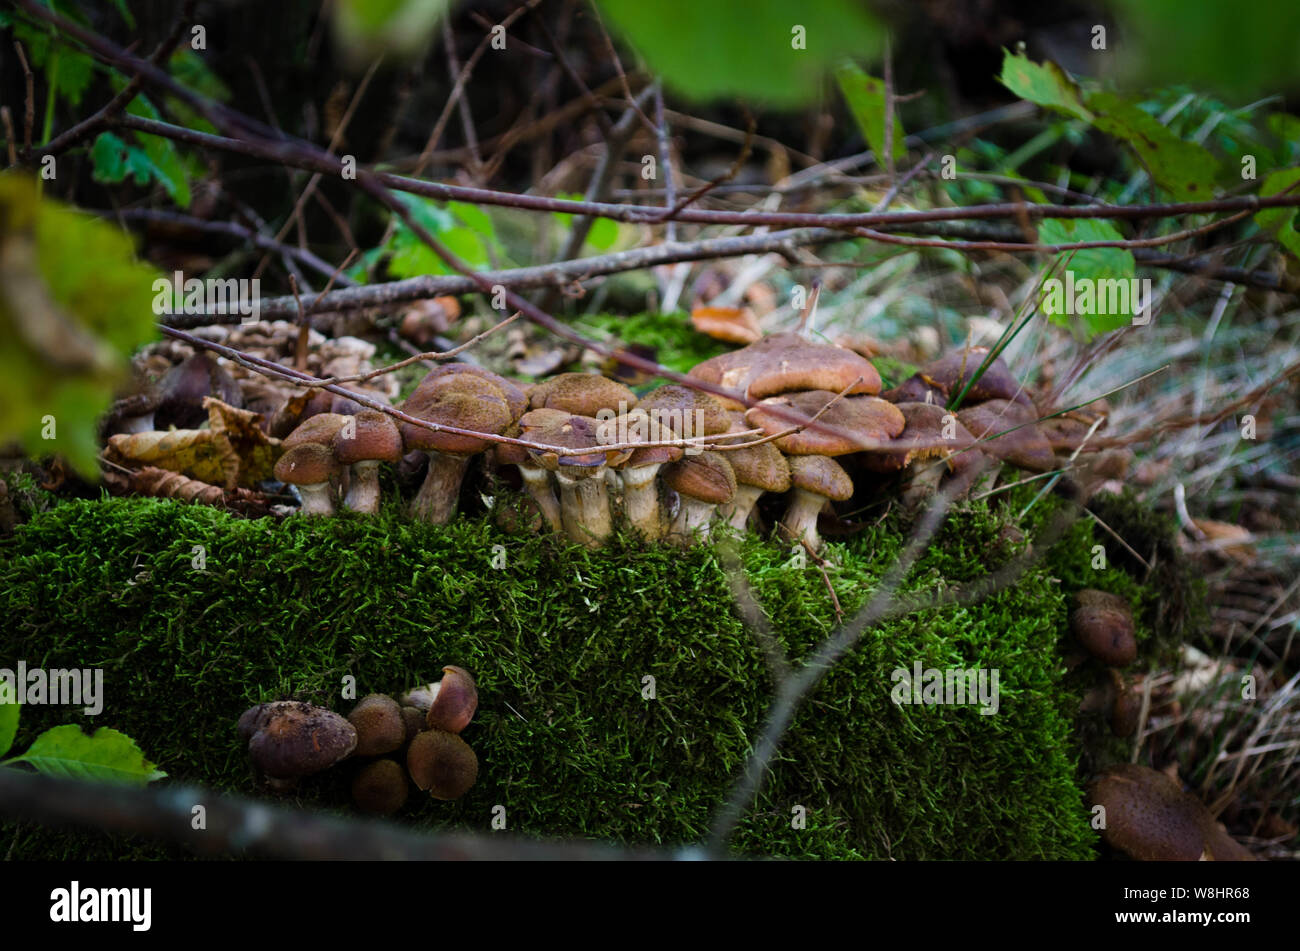 Les champignons agaric de miel. La grande famille de champignons poussant sur la souche d'un arbre. Champignons comestibles dans la forêt. Banque D'Images